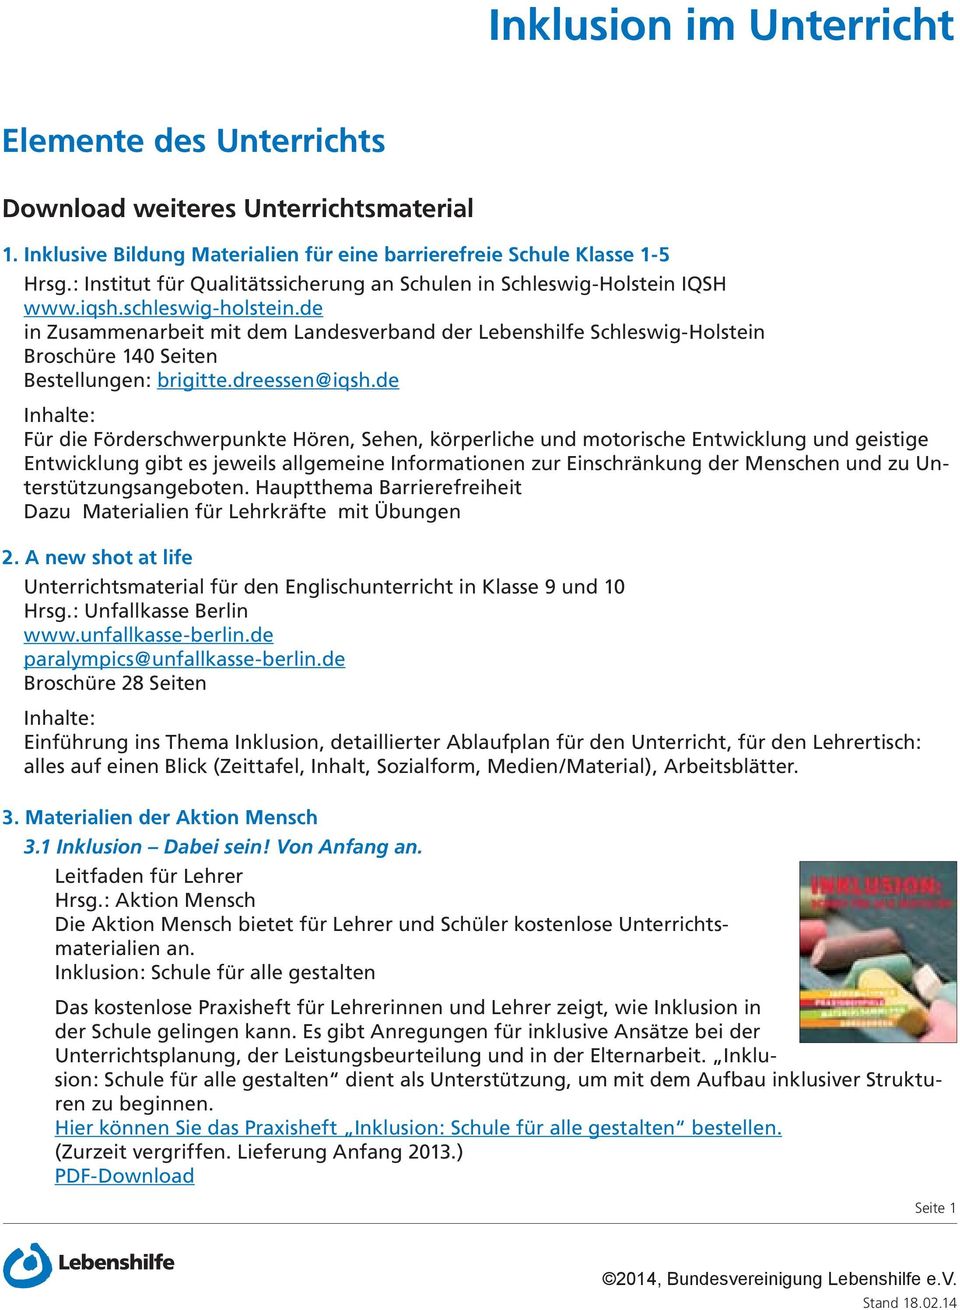 de in Zusammenarbeit mit dem Landesverband der Lebenshilfe Schleswig-Holstein Broschüre 140 Seiten Bestellungen: brigitte.dreessen@iqsh.